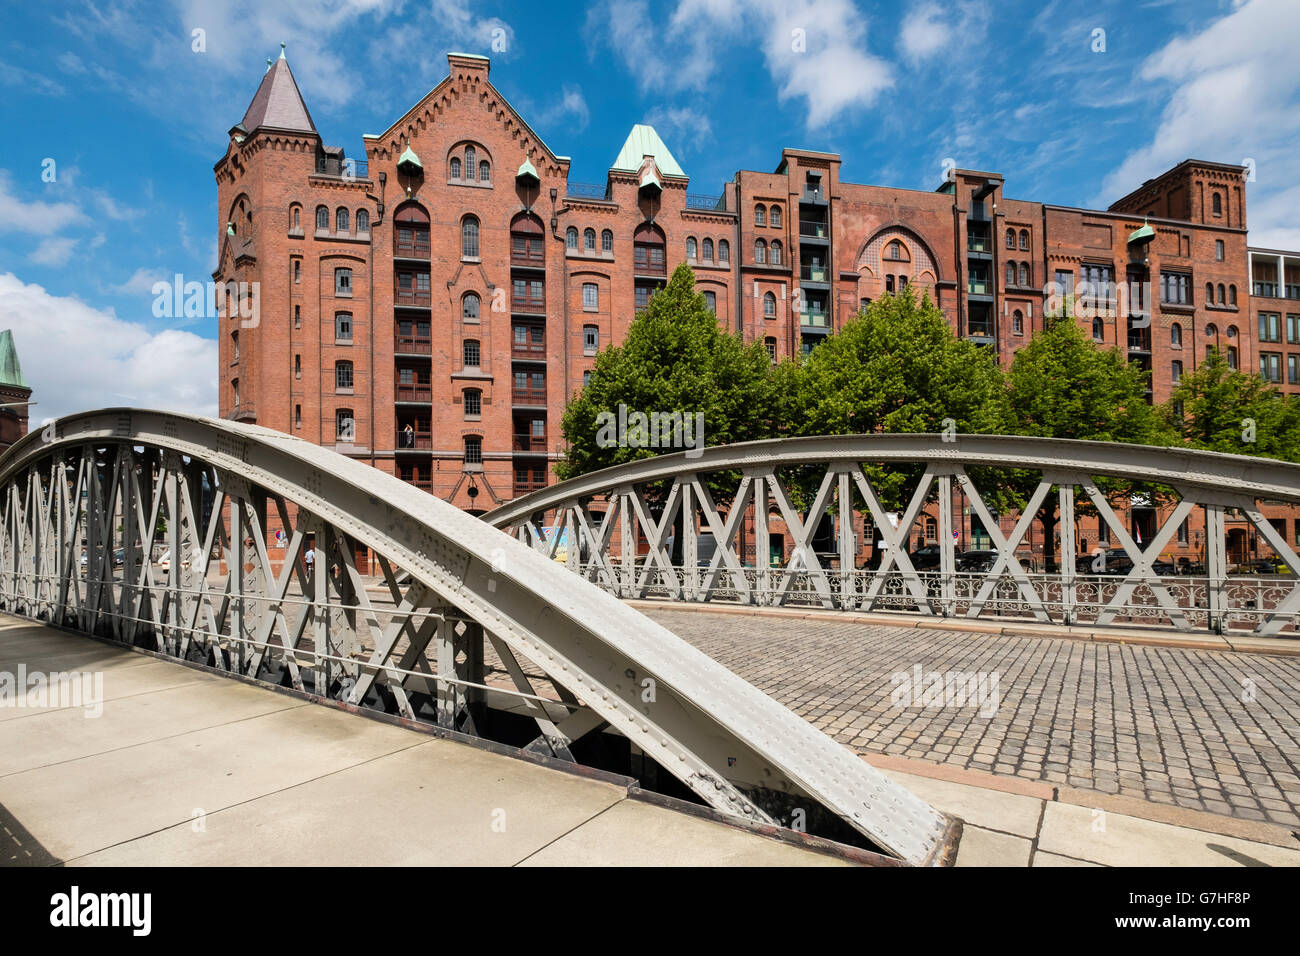 Ver histórico de almacenes de ladrillos rojos y el puente del Speicherstadt junto a canales en Hamburgo, Alemania Foto de stock